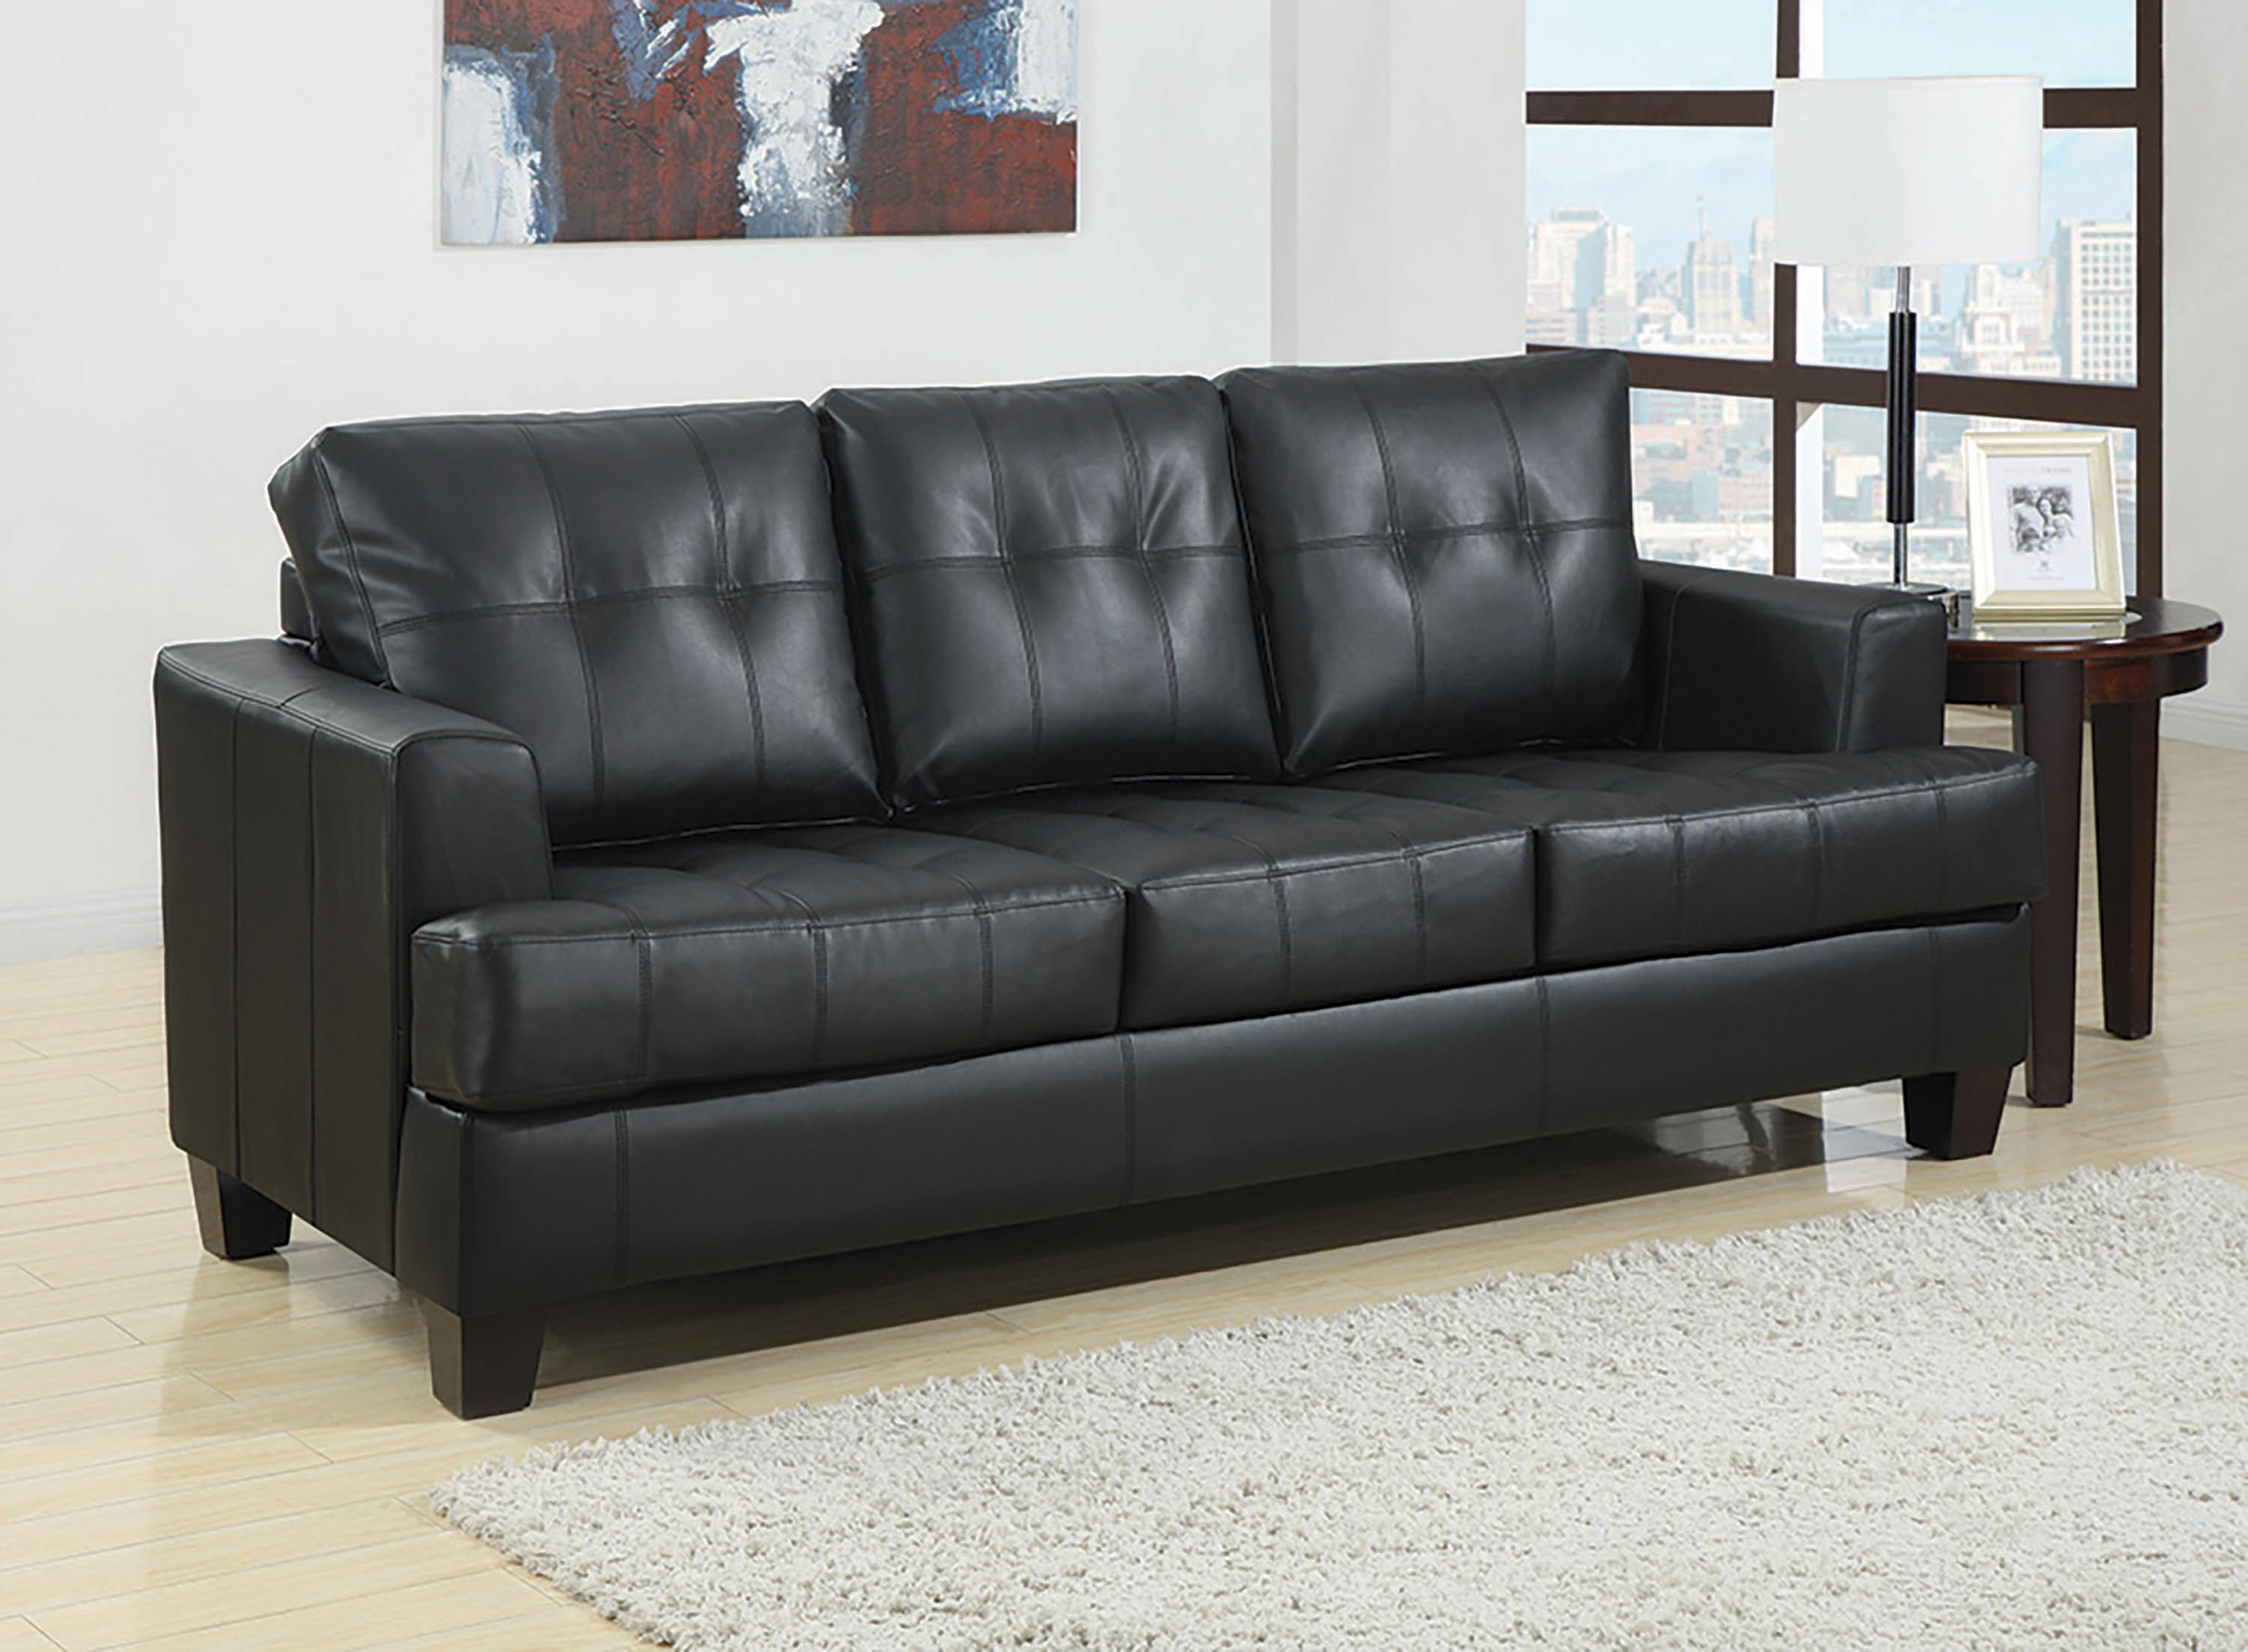 

    
Transitional Black Leatherette Sleeper Sofa Coaster 501680 Samuel
